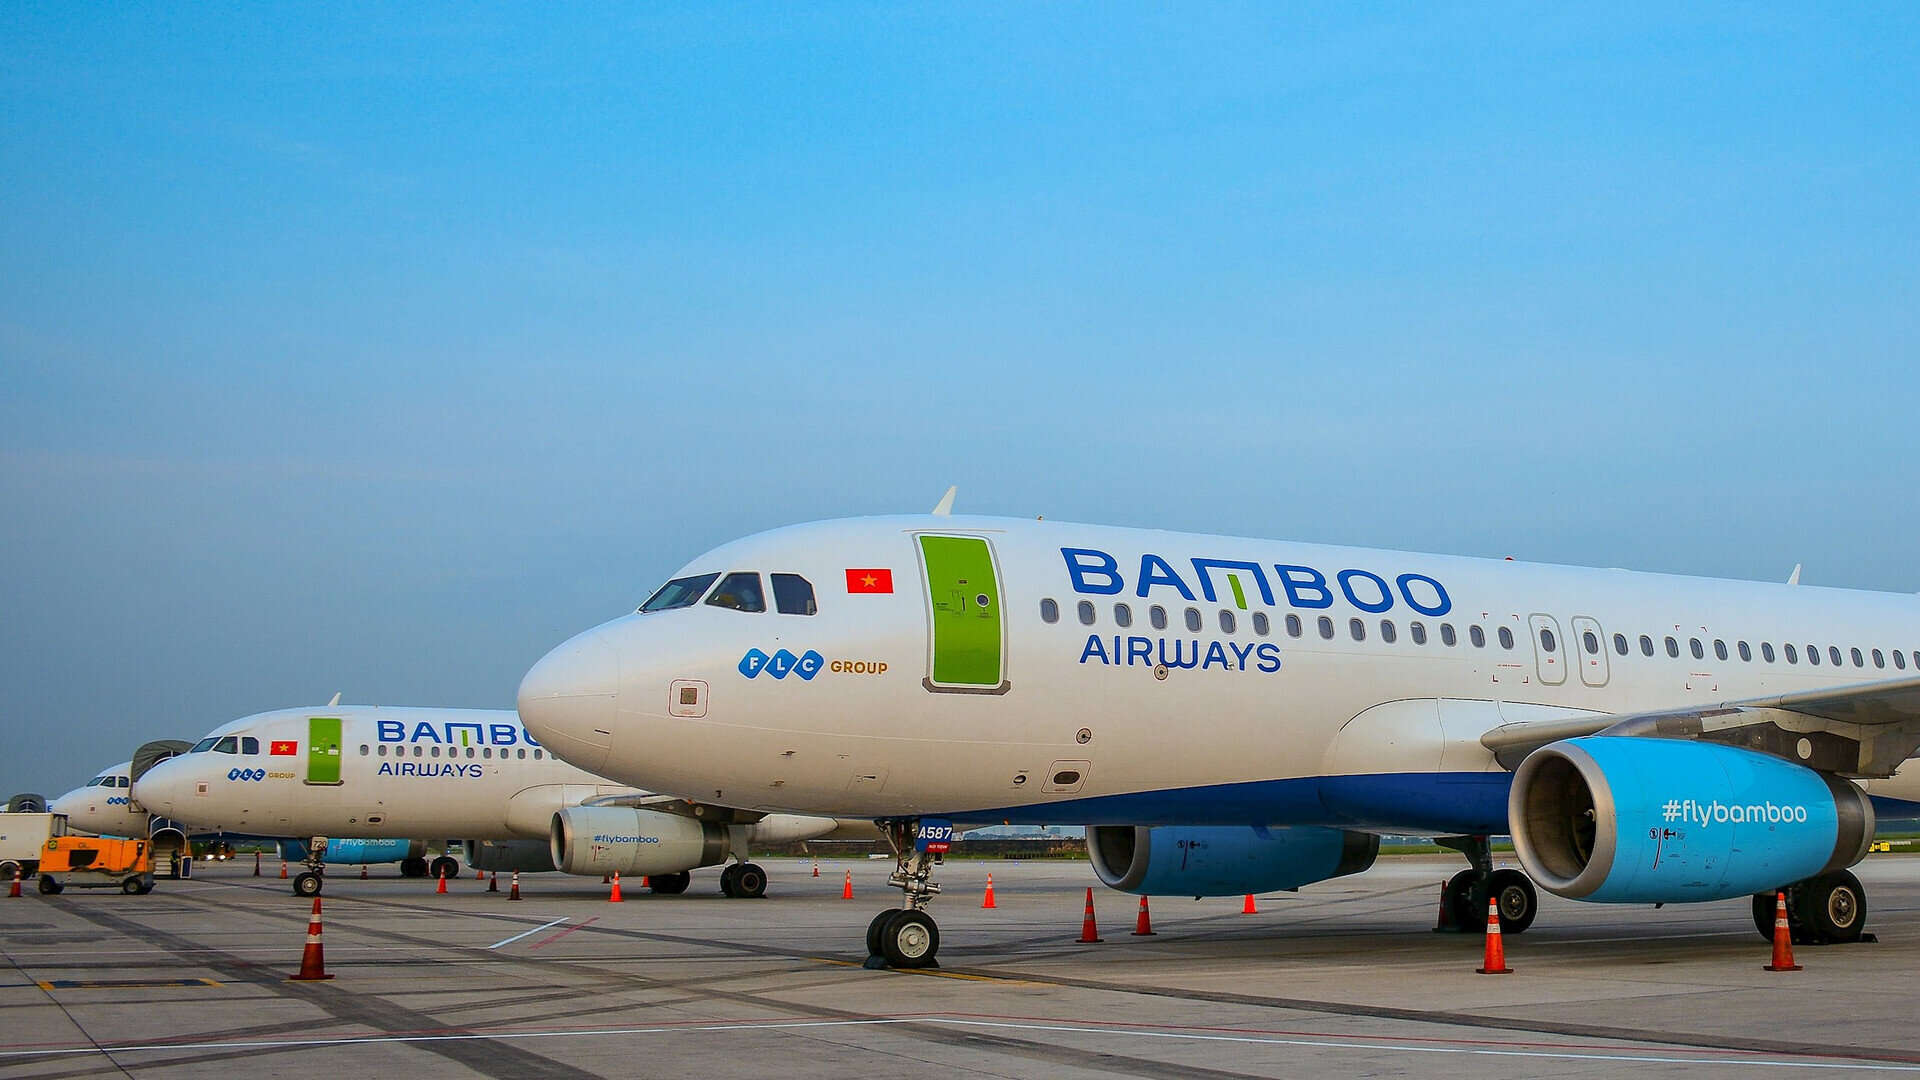 Nhiều chuyến bay Bamboo Airways liên tục bị thay đổi lịch trình trong những ngày gần đây. (Ảnh minh họa)